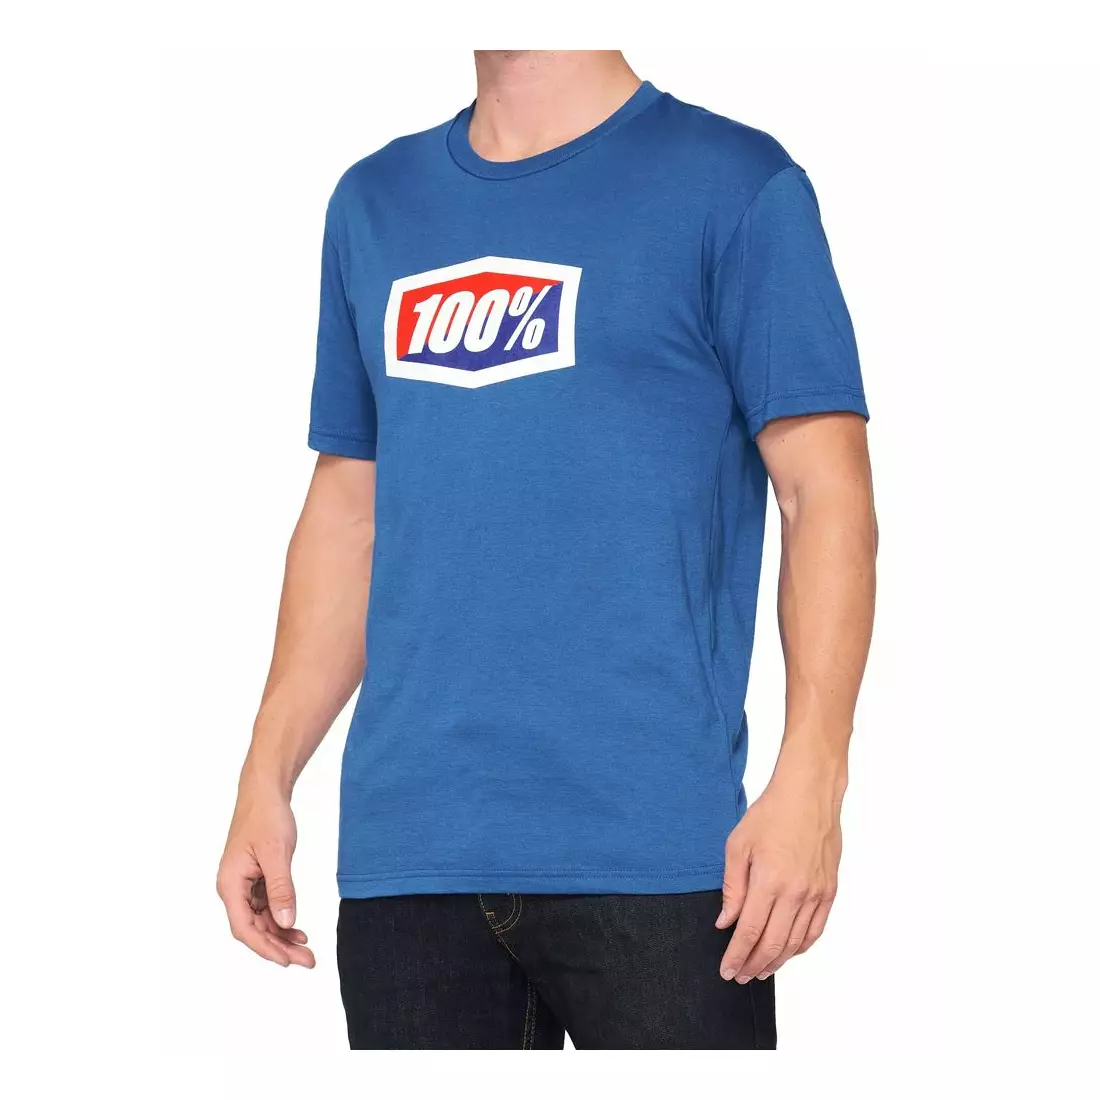 100% pánske tričko OFFICIAL blue STO-32017-002-13